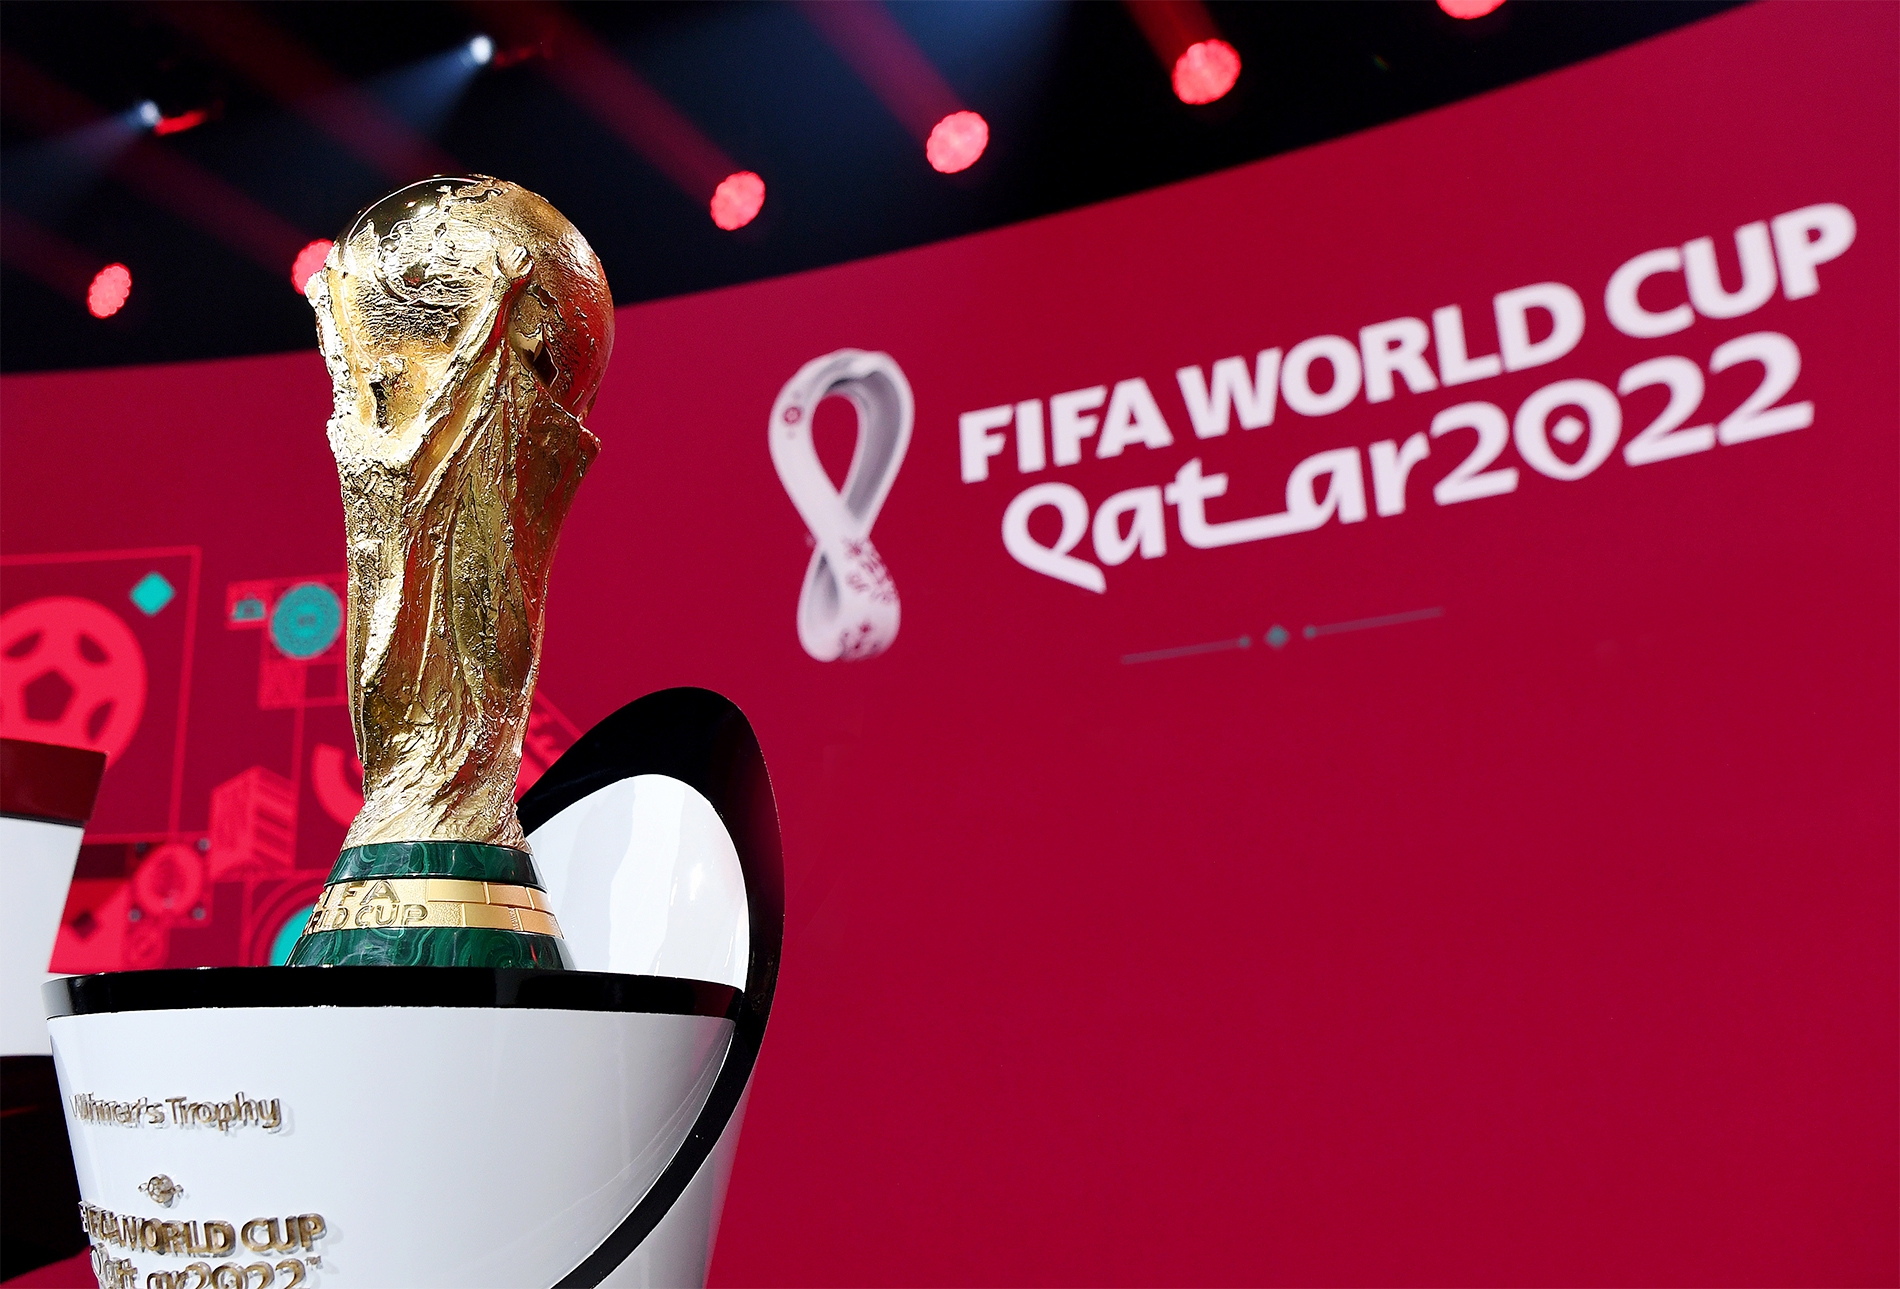 Lịch phát sóng trực tiếp các trận bóng đá World Cup 2022 trên kênh VTV2 - Ảnh 2.